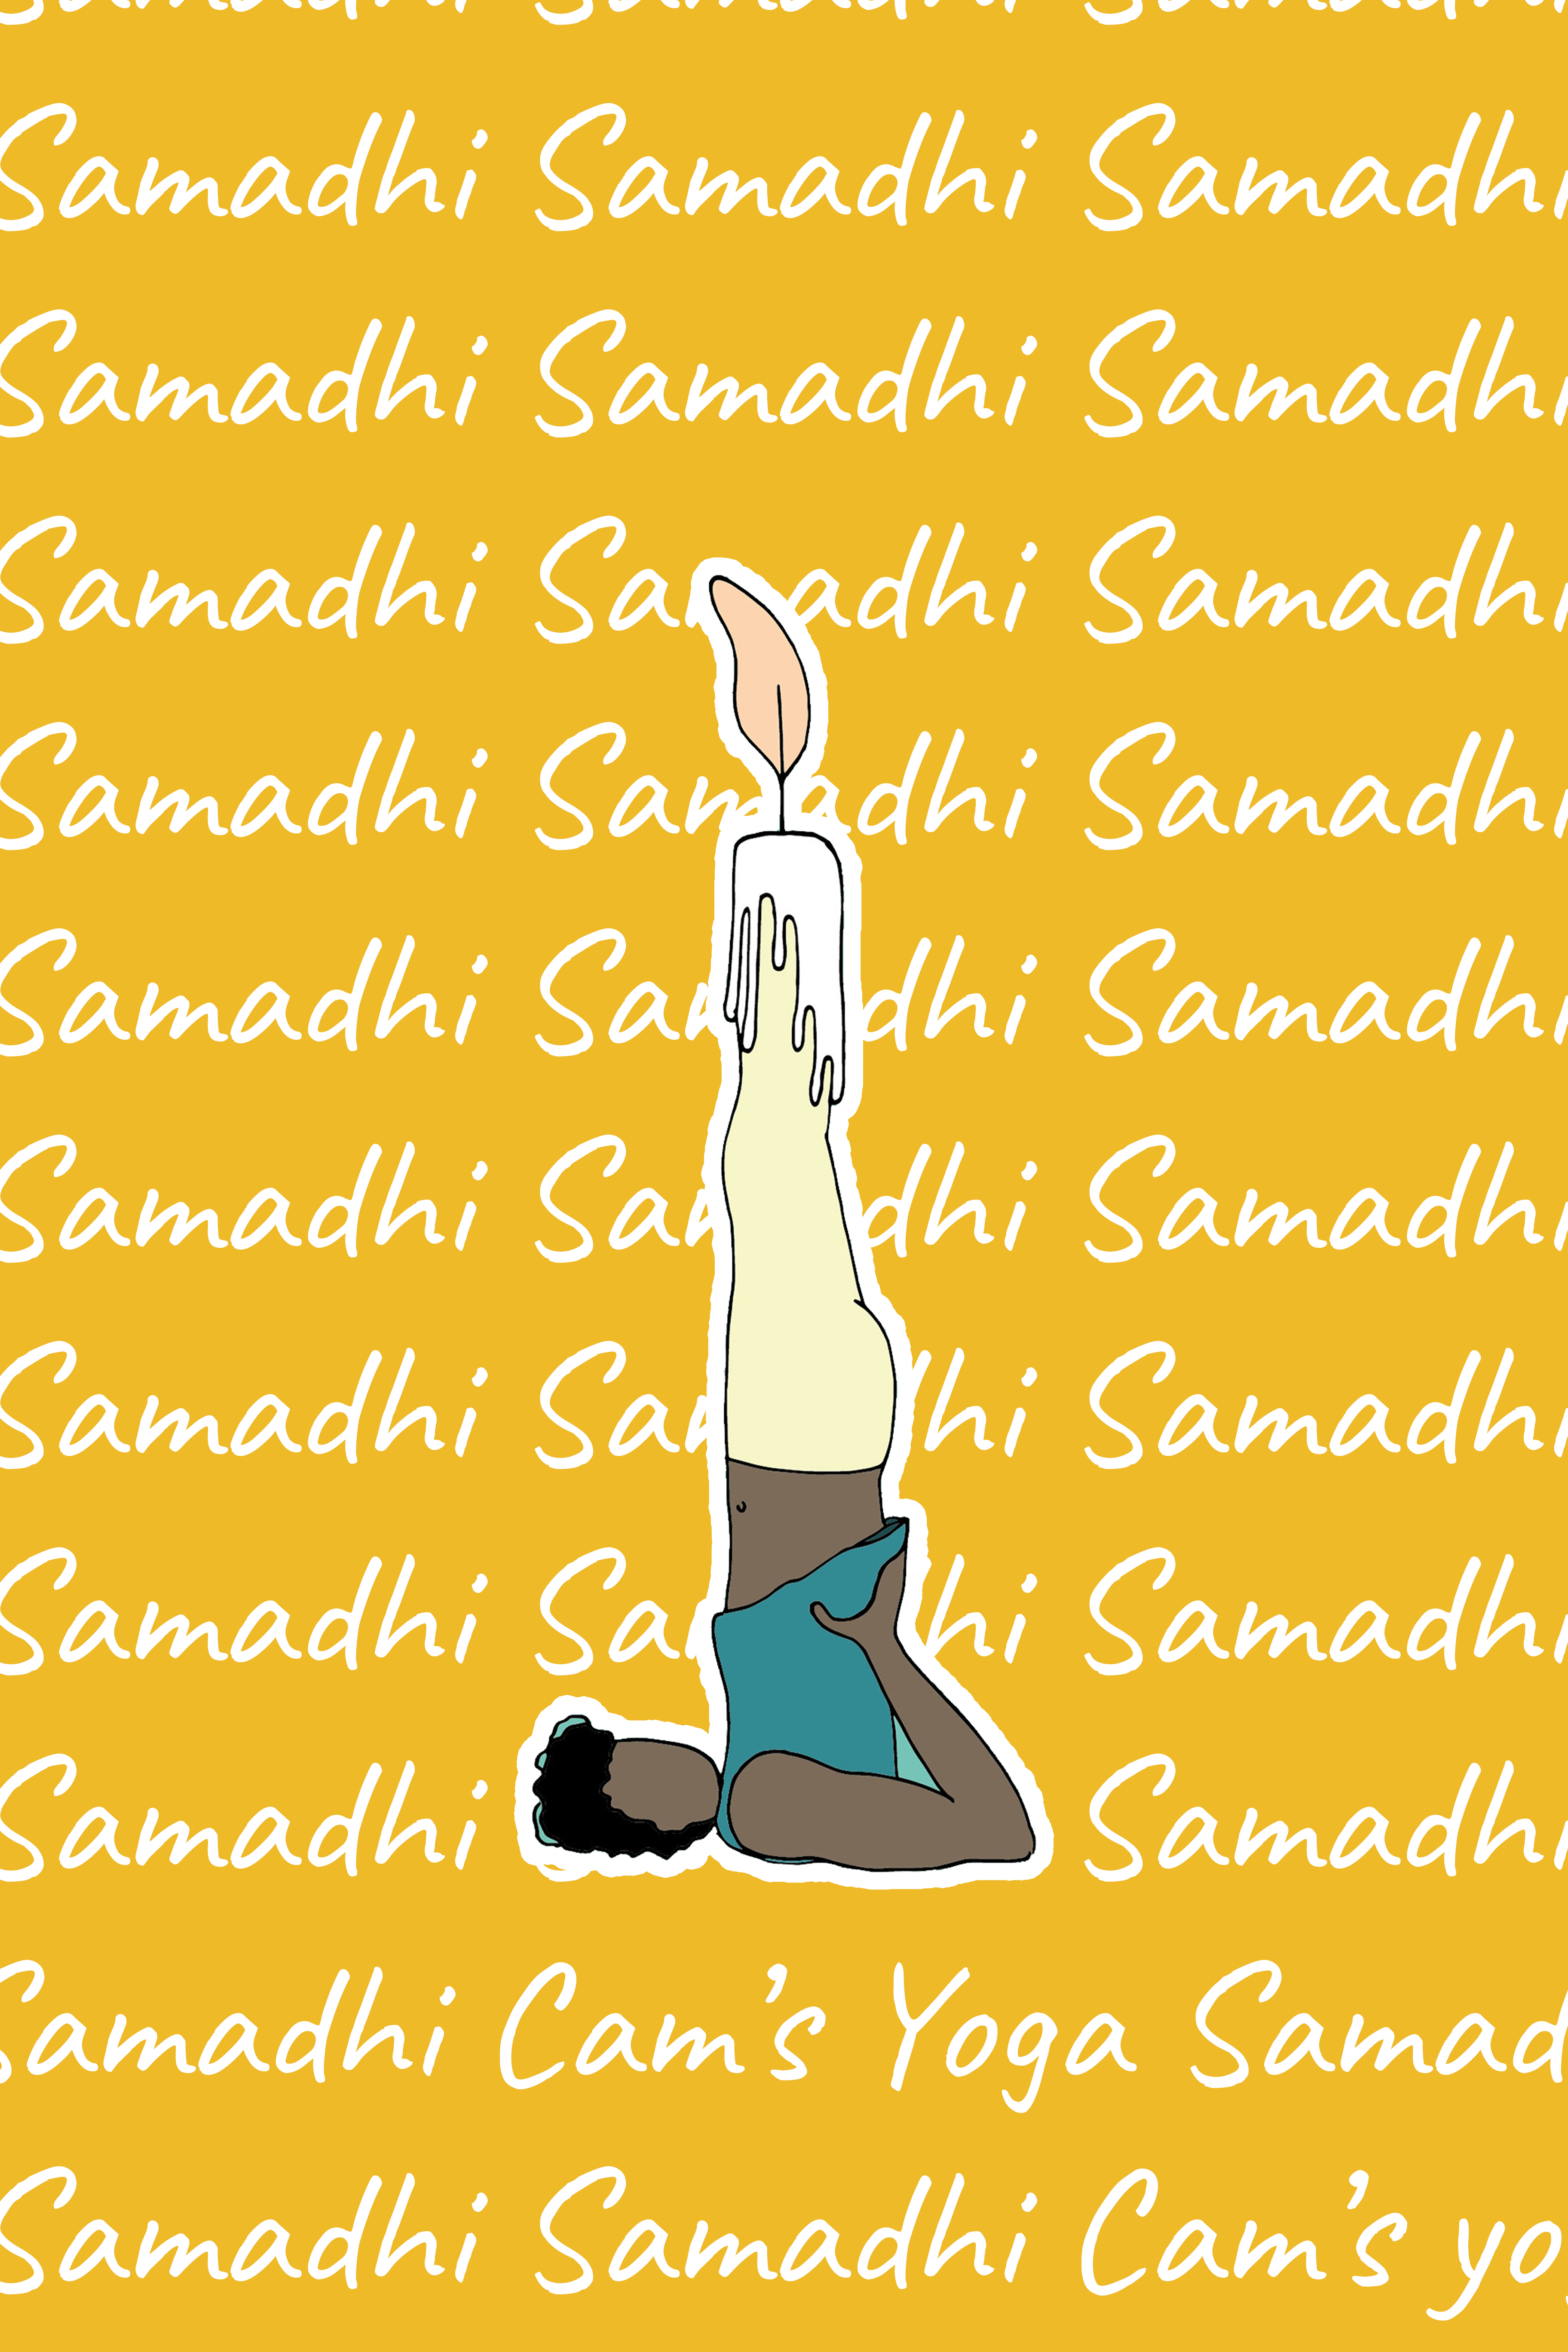 2 samadhi lauriane rouillet cam's yoga